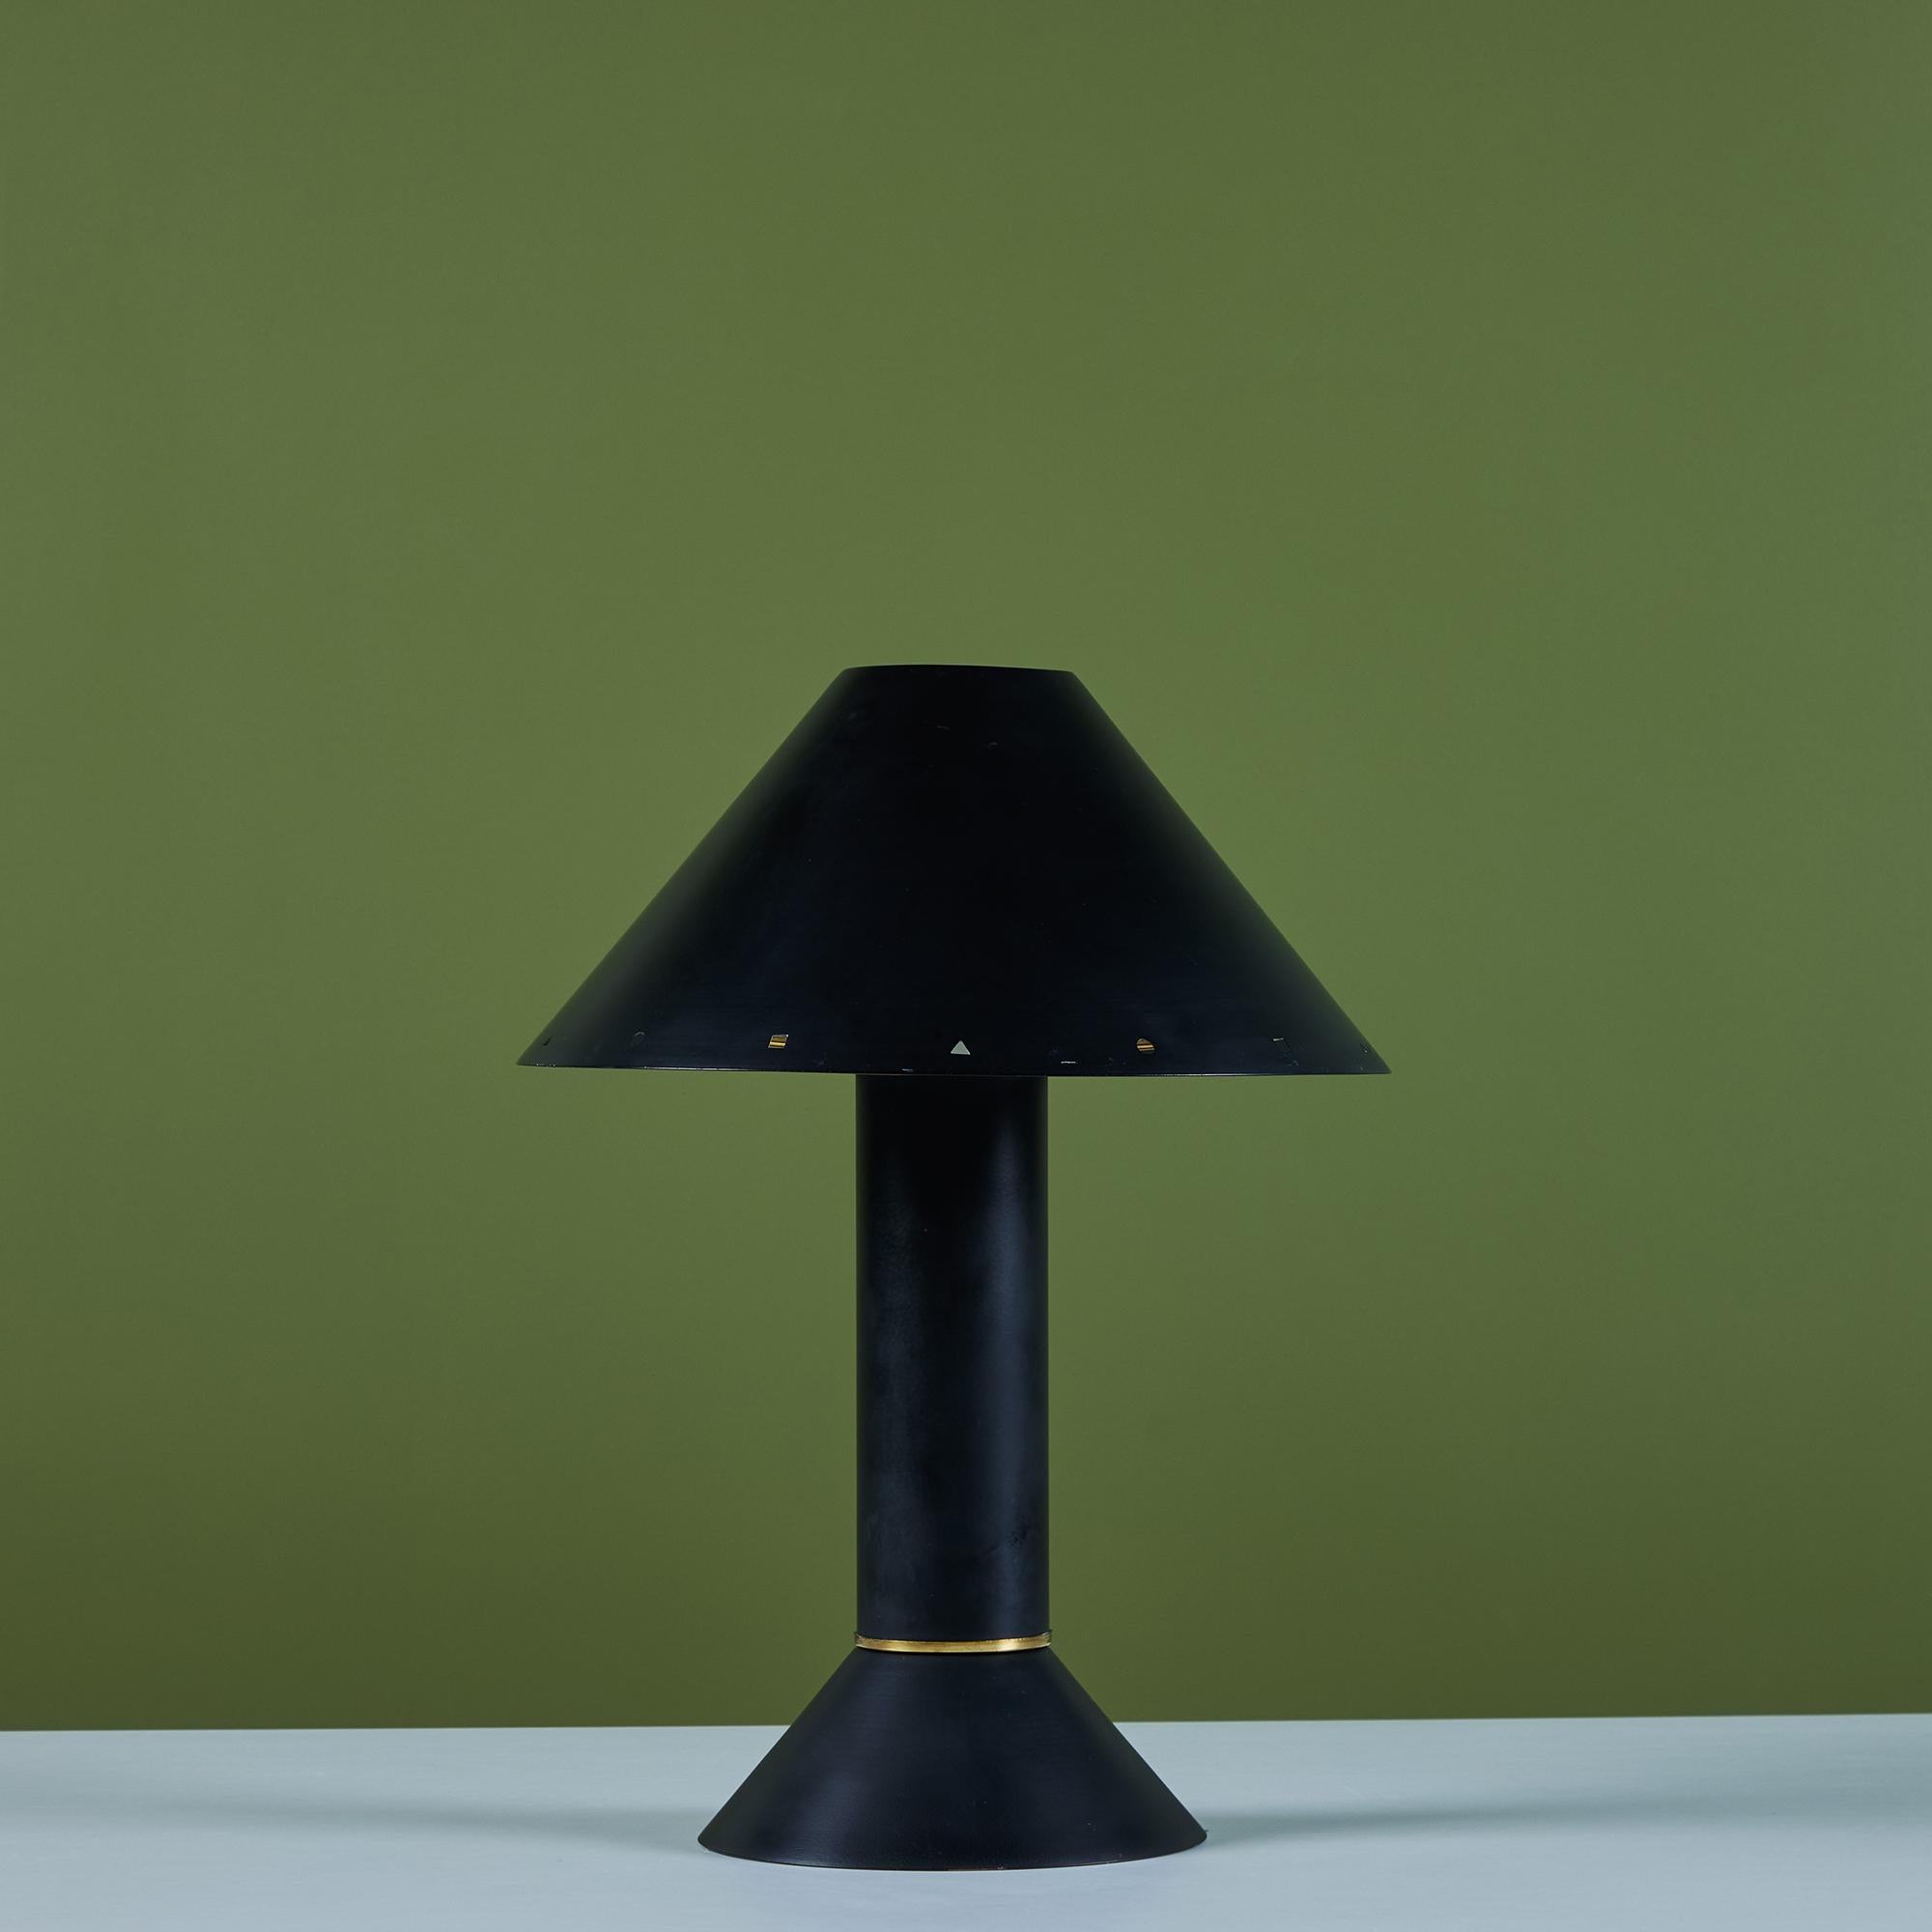 Postmoderne Tischleuchte des Beleuchtungsdesigners Ron Rezek aus Los Angeles, ca. 1980er Jahre. Die Lampe hat einen schwarz emaillierten Metallrahmen und einen abnehmbaren schwarzen Schirm mit poliertem Messingring, der am unteren Ende des